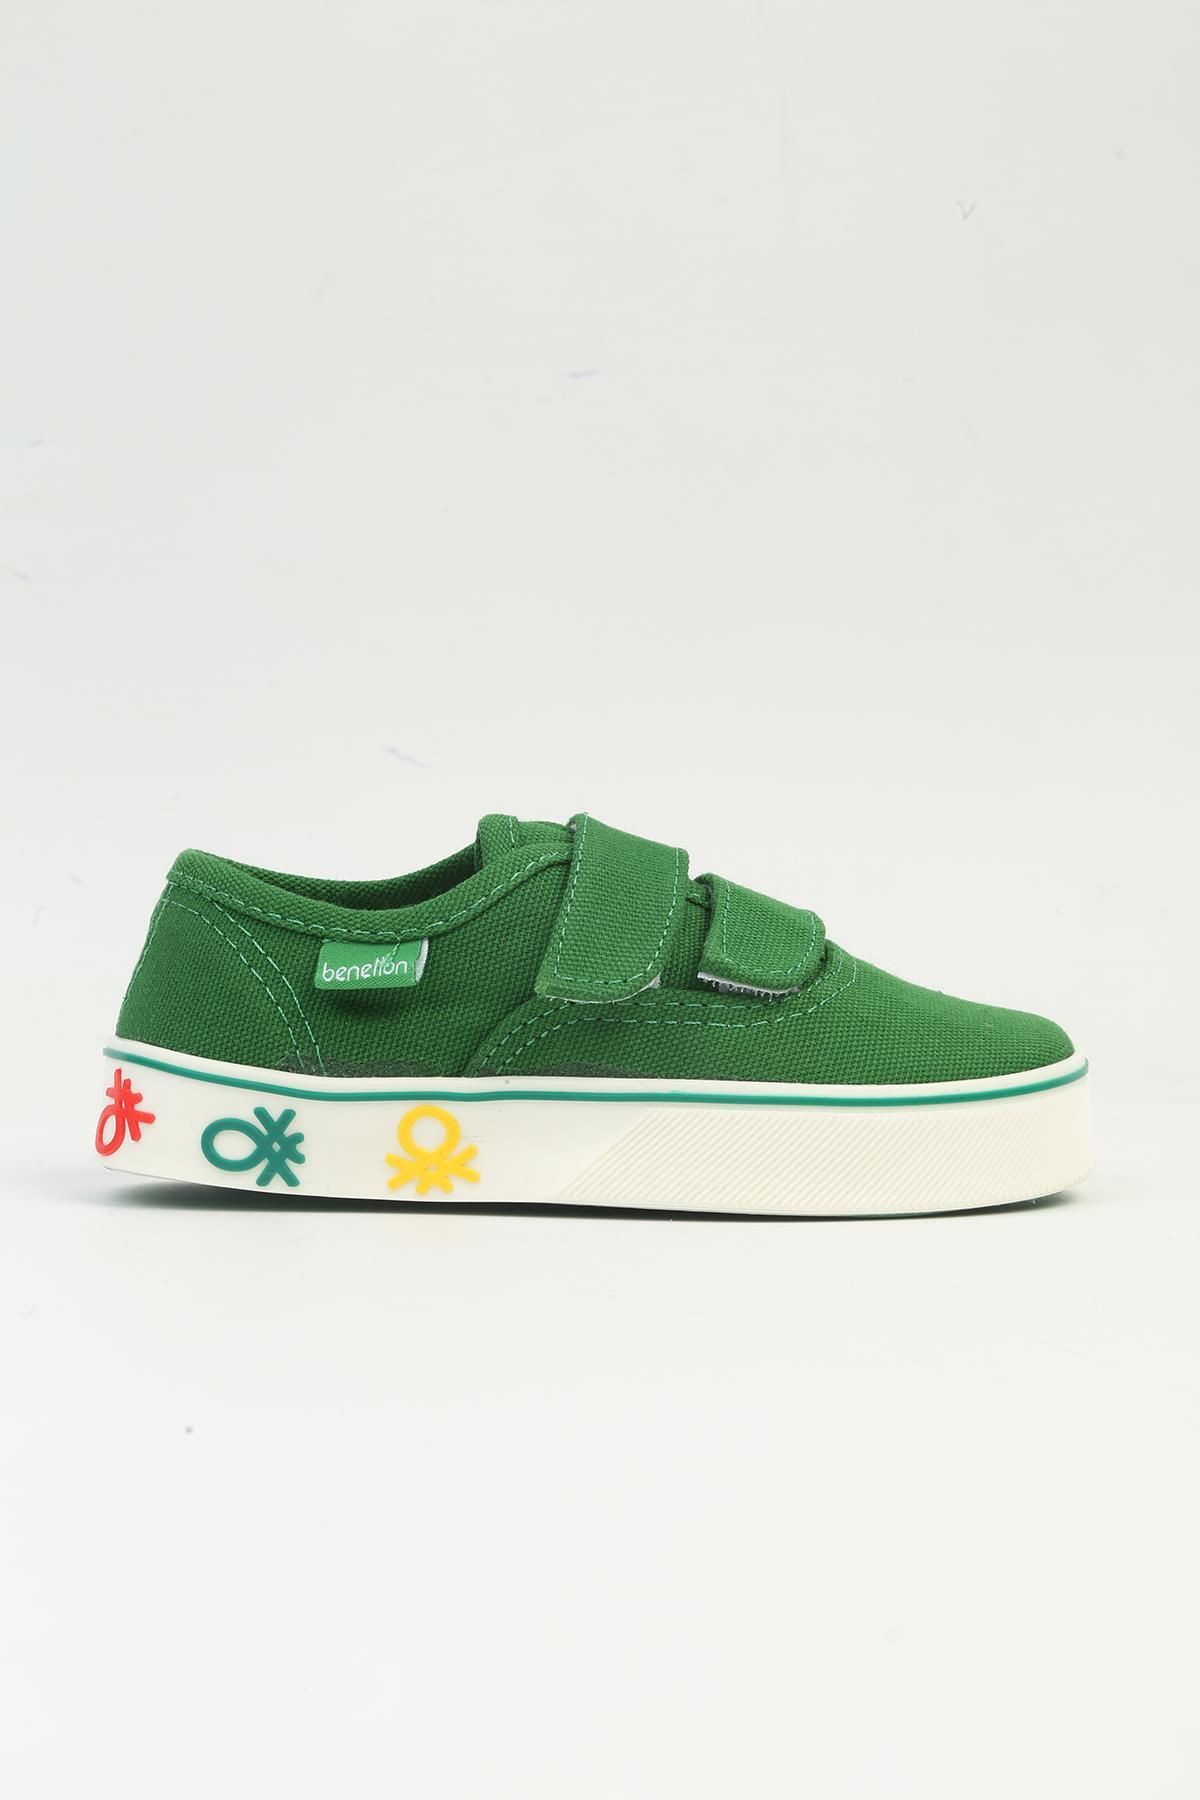 Benetton ® |BN-30959-  Yeşil - Çocuk Spor Ayakkabı